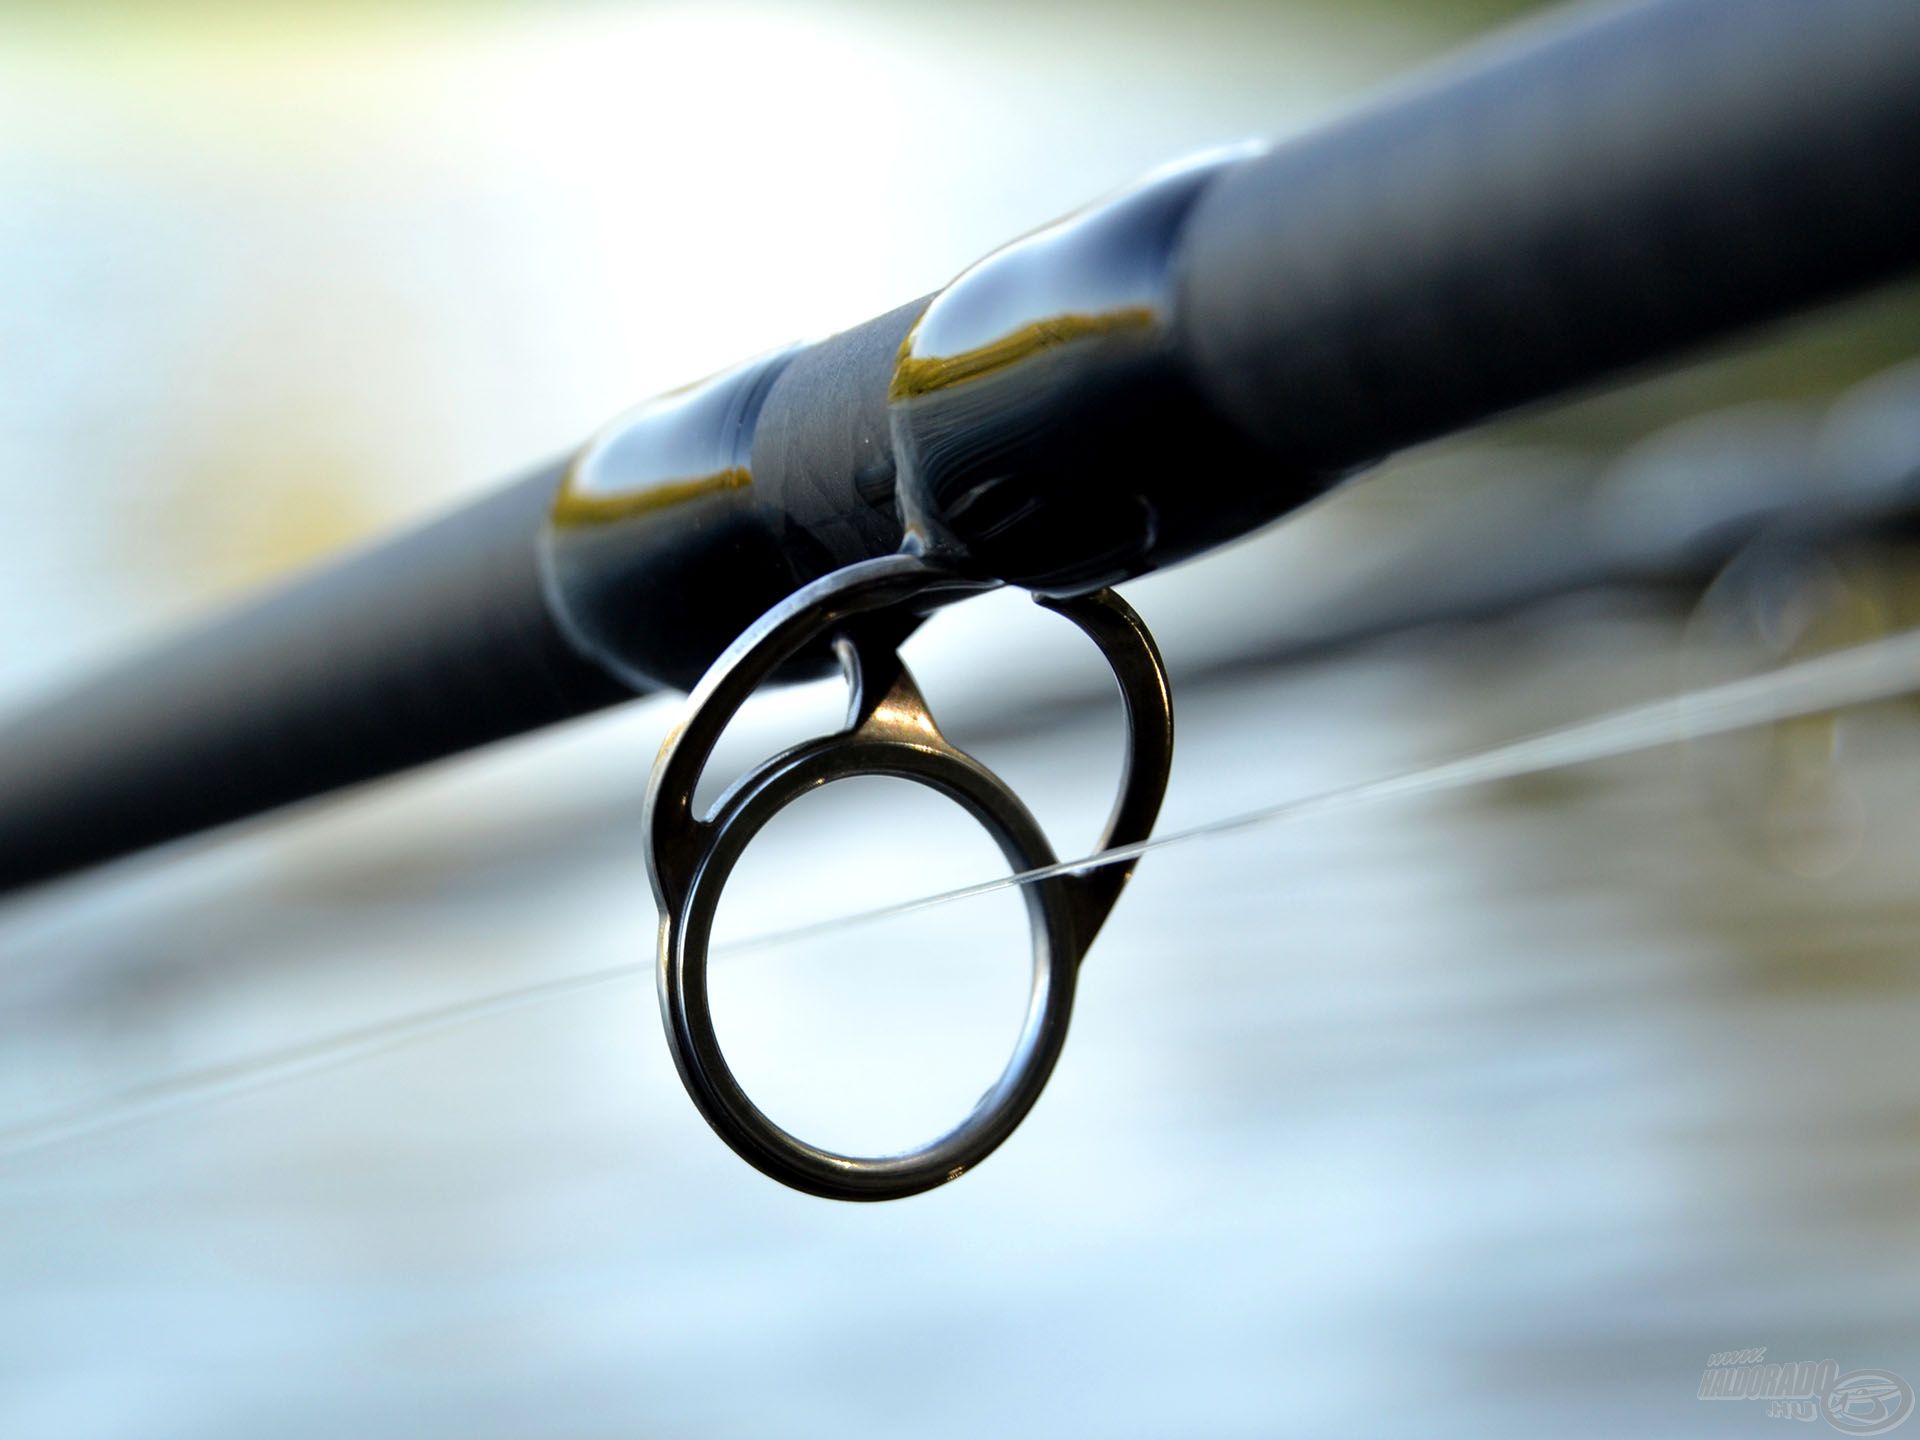 A stabilan rögzített gyűrűk kötései feleakkorák, mint a SiC gyűrűk esetében, így még nagy megterhelésnél sem törik meg a bot tökéletes íve